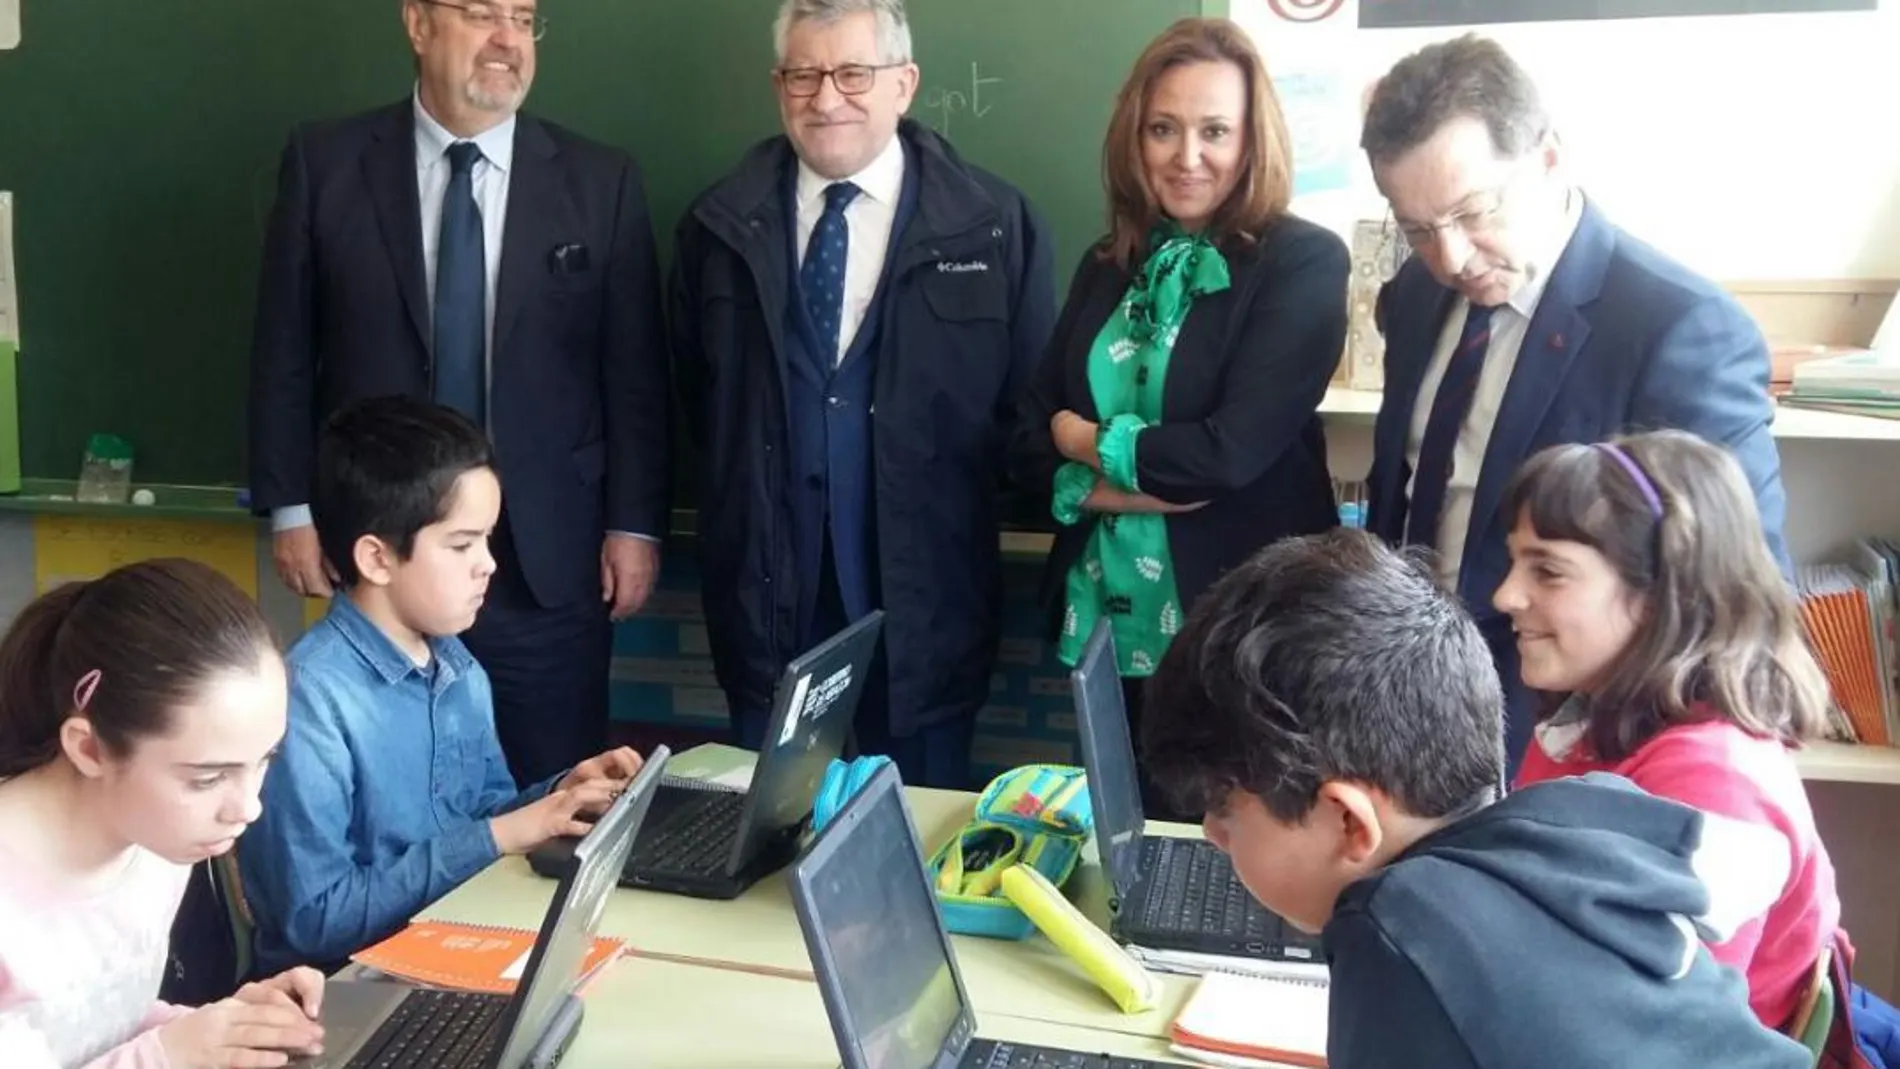 Rey visita un colegio en Zaragoza junto a Pérez, Alonso y Felpeto